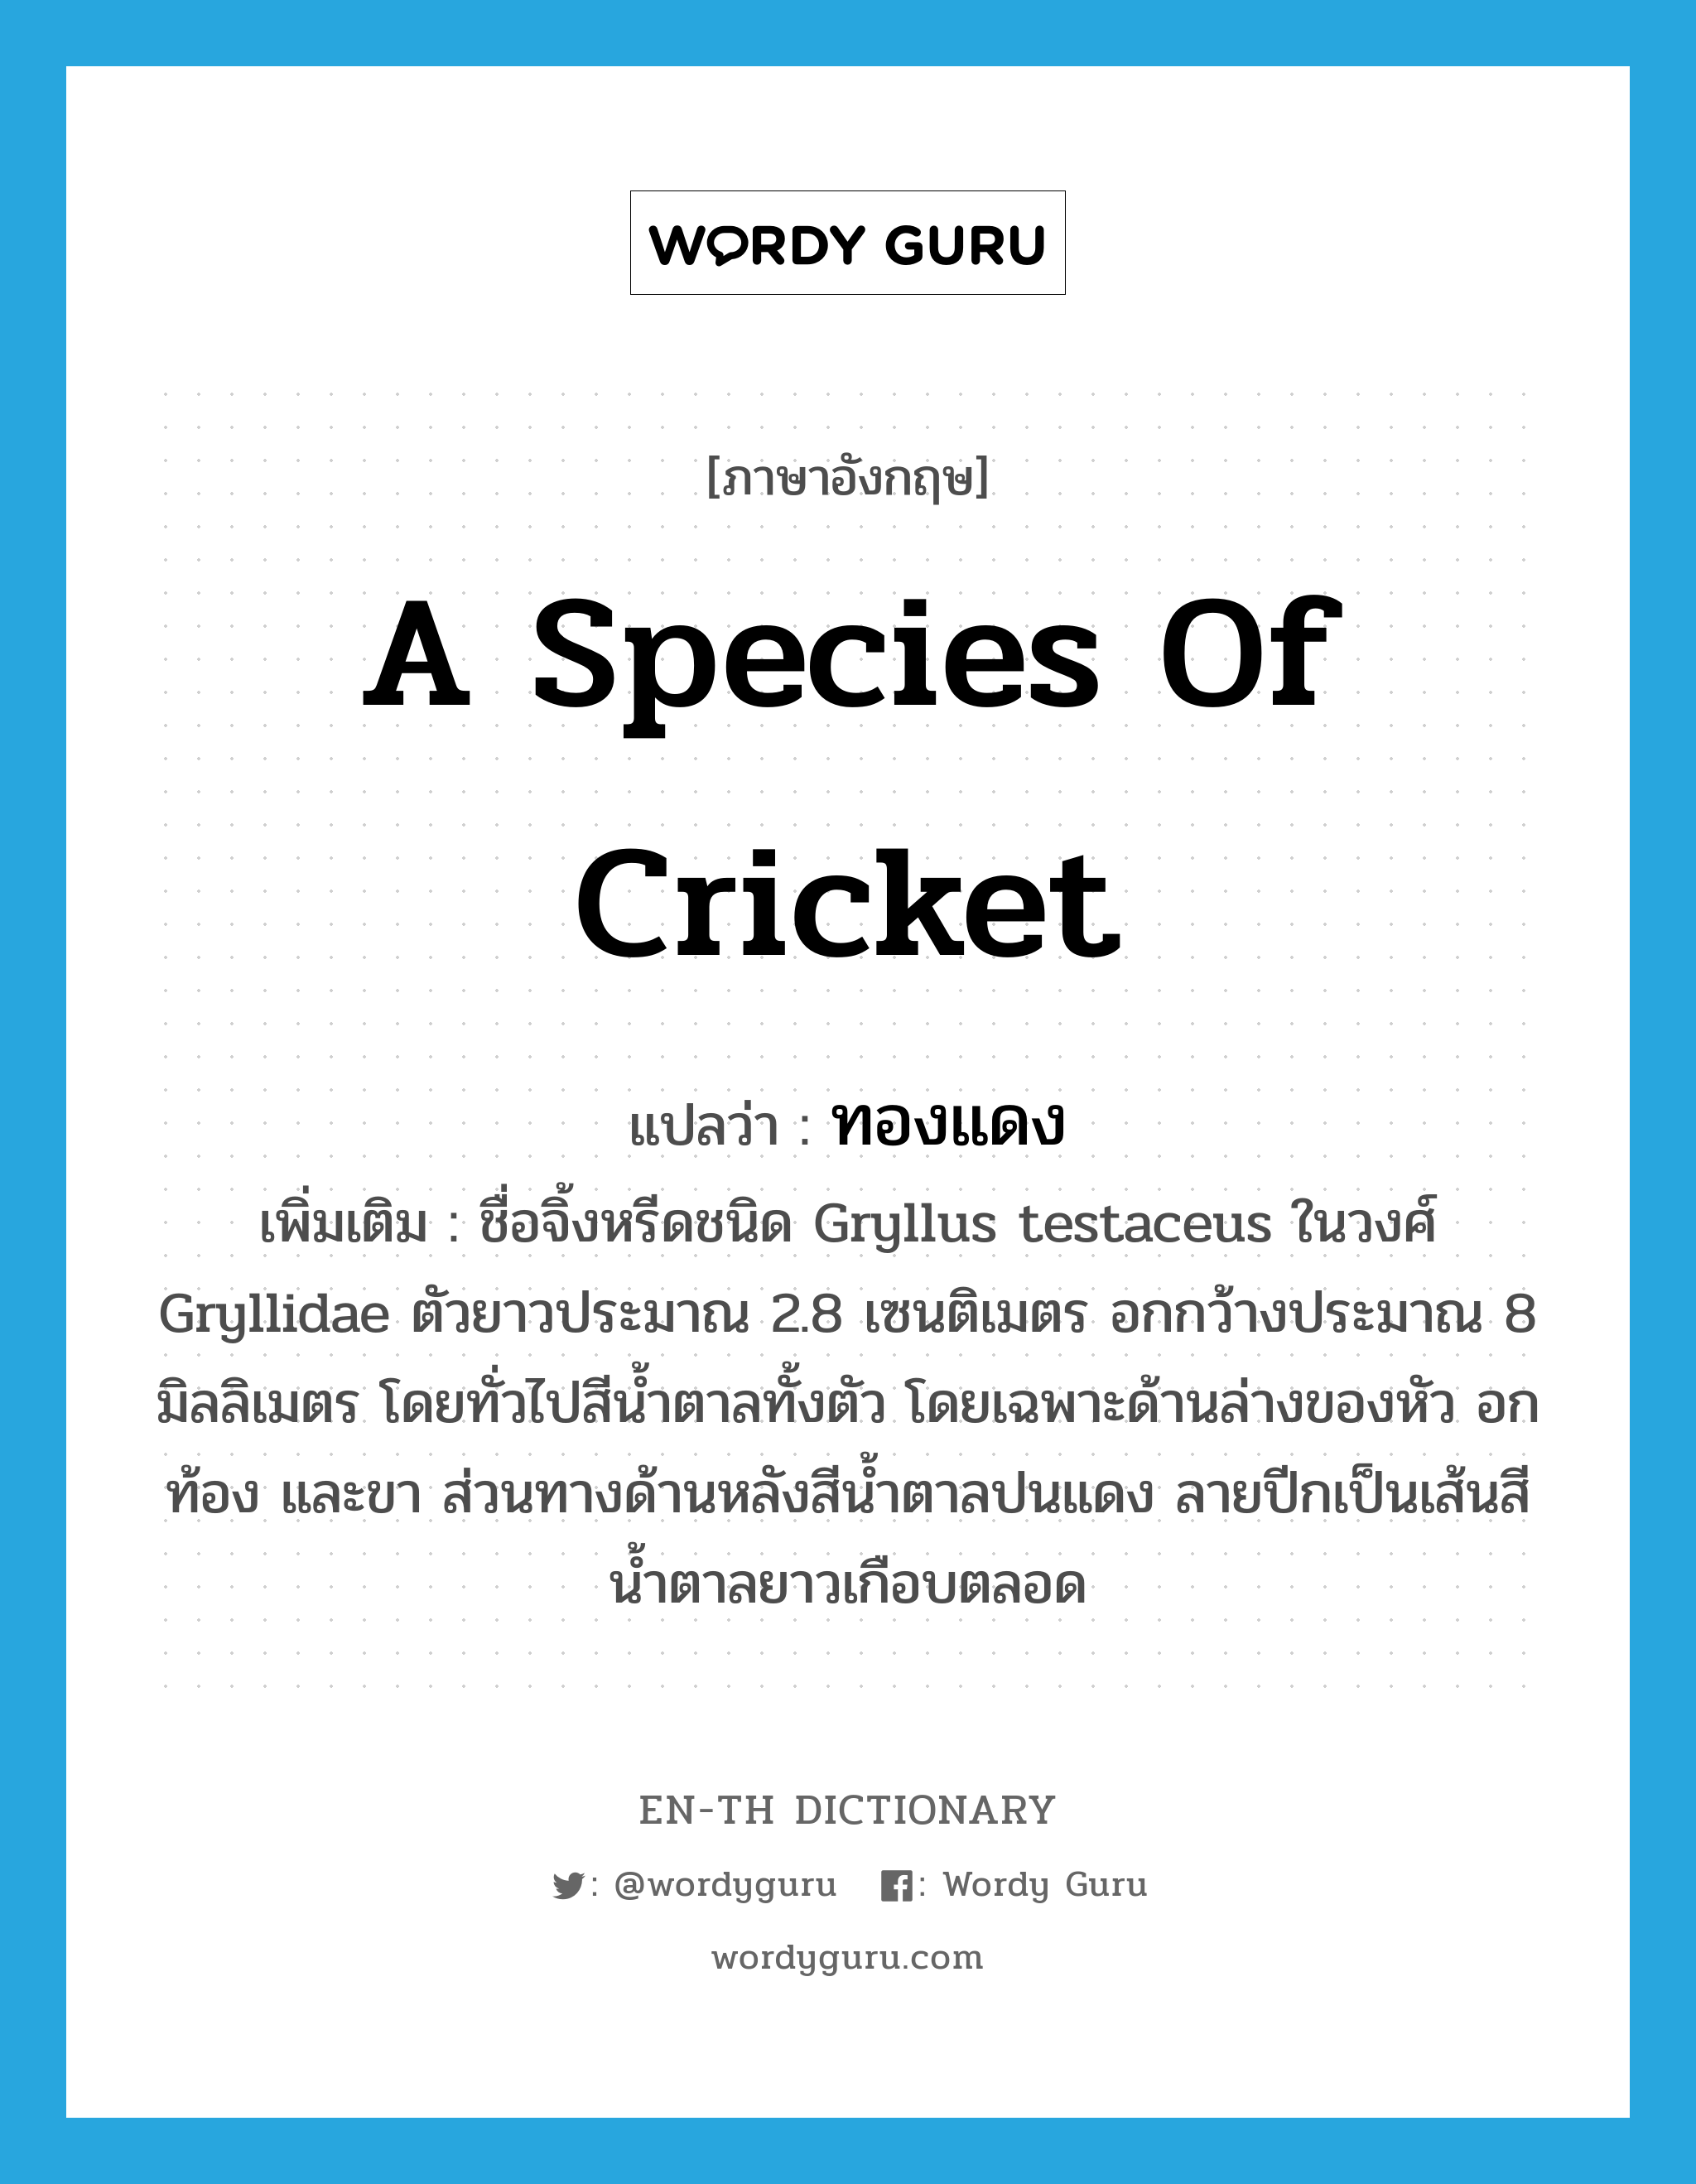 ทองแดง ภาษาอังกฤษ?, คำศัพท์ภาษาอังกฤษ ทองแดง แปลว่า a species of cricket ประเภท N เพิ่มเติม ชื่อจิ้งหรีดชนิด Gryllus testaceus ในวงศ์ Gryllidae ตัวยาวประมาณ 2.8 เซนติเมตร อกกว้างประมาณ 8 มิลลิเมตร โดยทั่วไปสีน้ำตาลทั้งตัว โดยเฉพาะด้านล่างของหัว อก ท้อง และขา ส่วนทางด้านหลังสีน้ำตาลปนแดง ลายปีกเป็นเส้นสีน้ำตาลยาวเกือบตลอด หมวด N